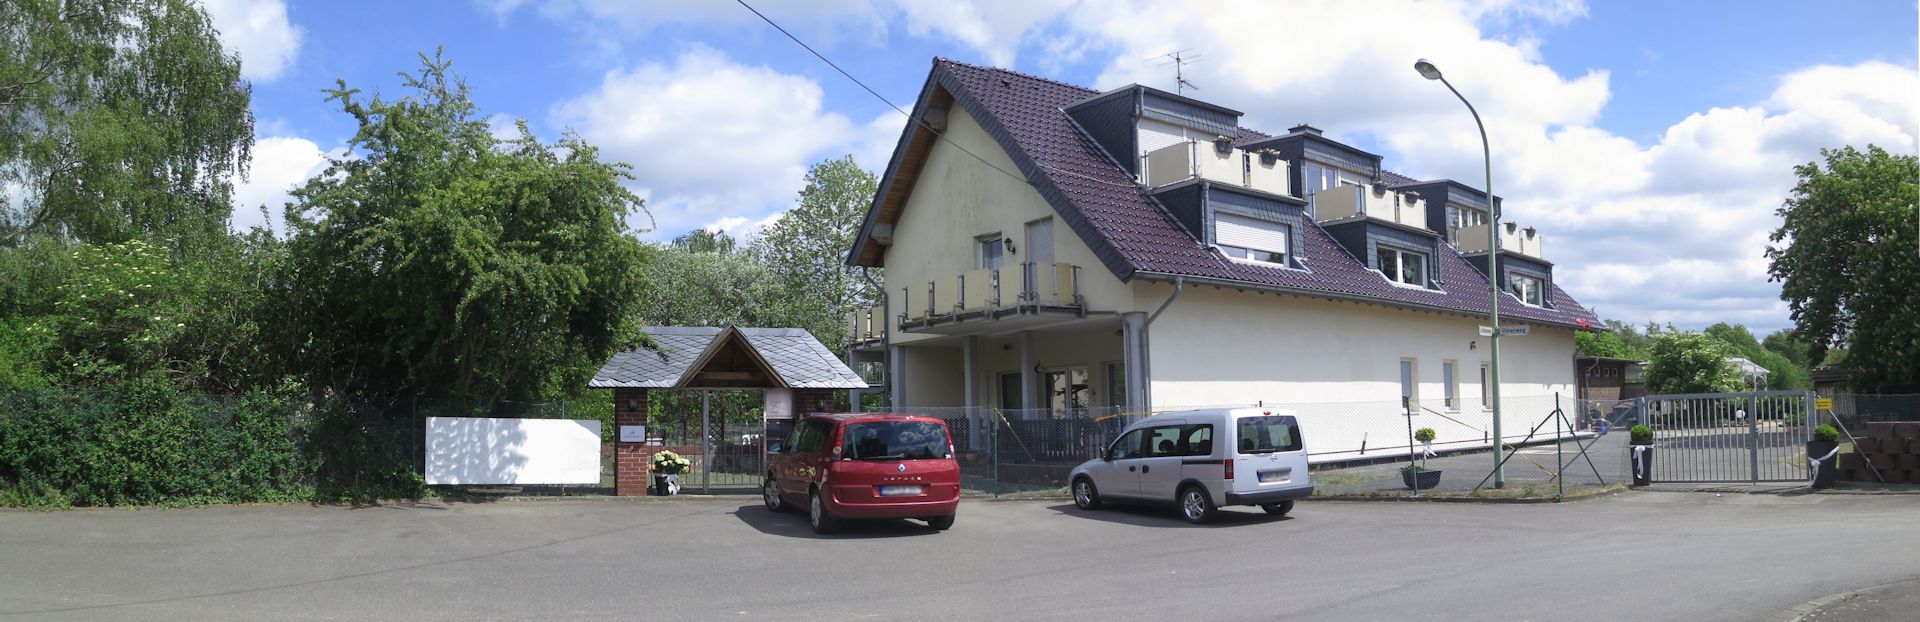 Wohnhaus vormals Alter-Bahnhof - Foto: Achim Klippstein